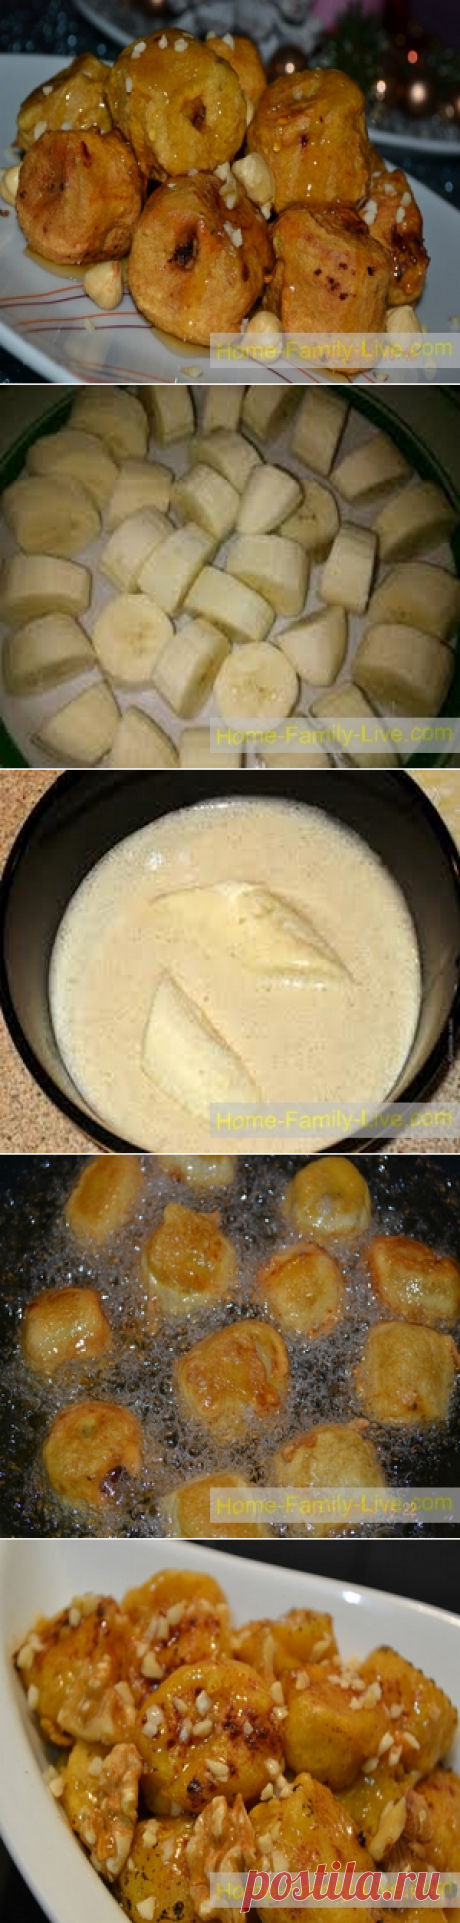 Бананы в кляре - пошаговый фото рецепт - десертКулинарные рецепты